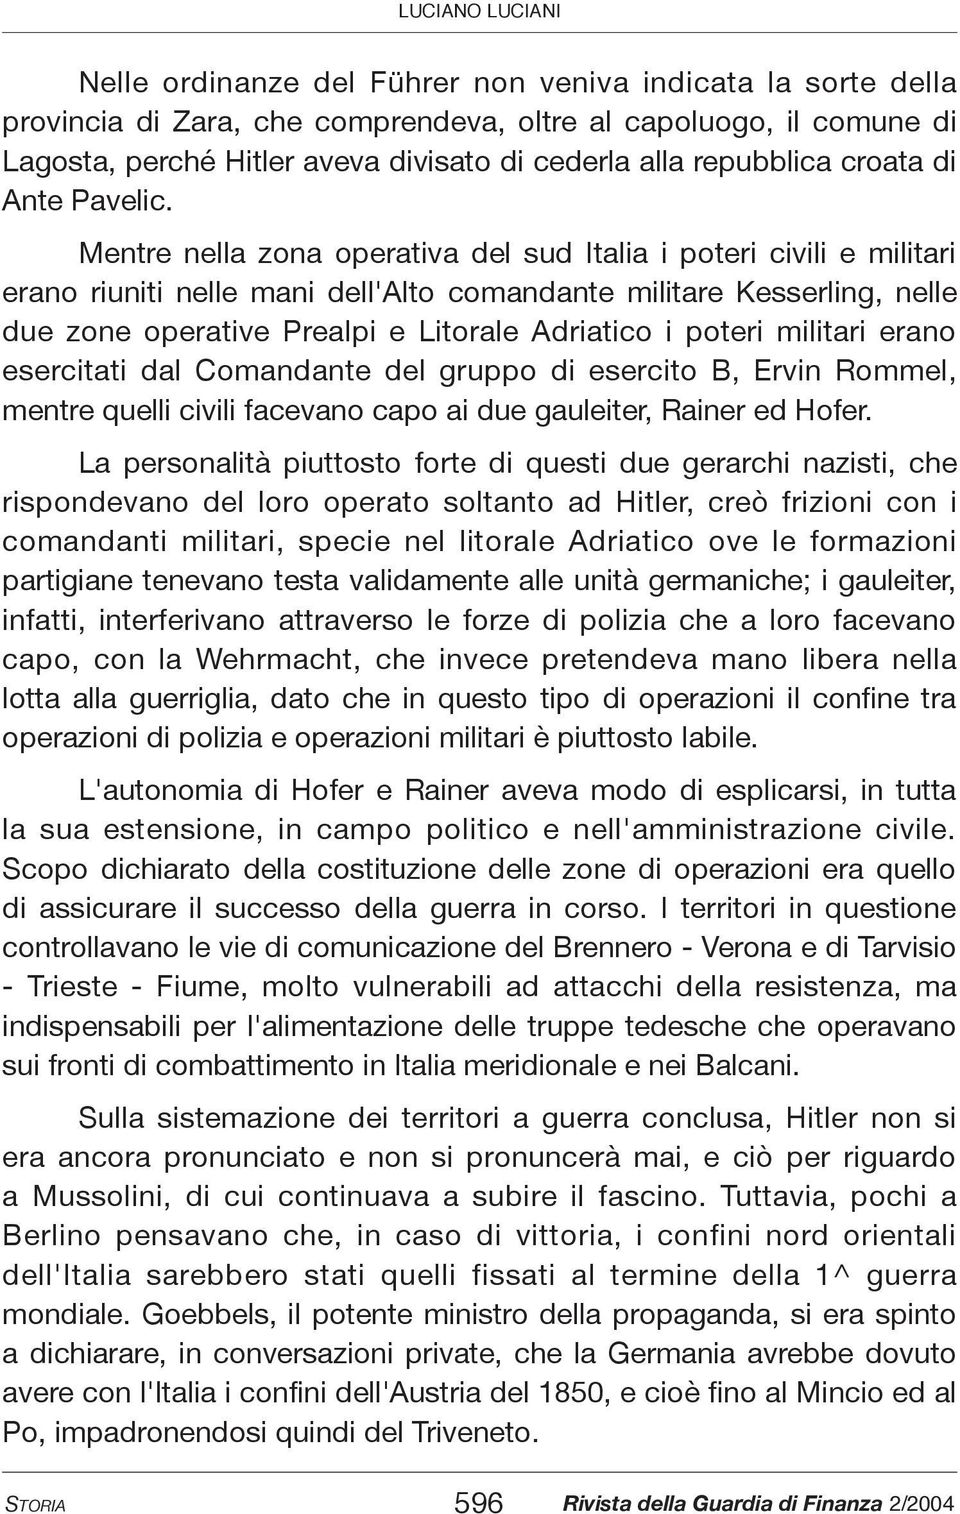 Mentre nella zona operativa del sud Italia i poteri civili e militari erano riuniti nelle mani dell'alto comandante militare Kesserling, nelle due zone operative Prealpi e Litorale Adriatico i poteri